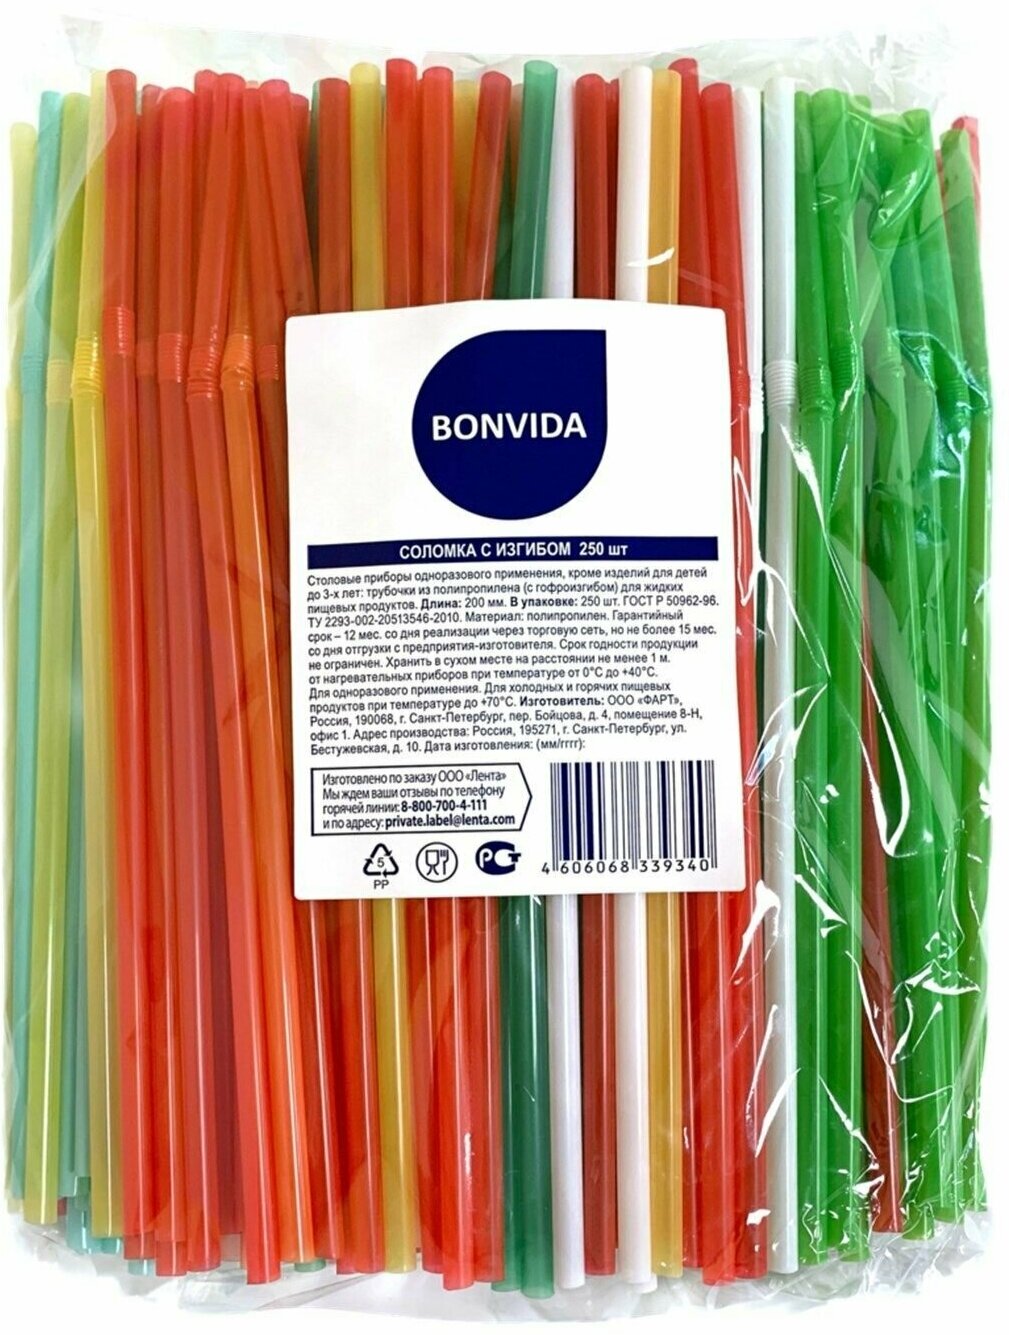 Соломка BONVIDA с изгибом, 250шт - 10 упаковок